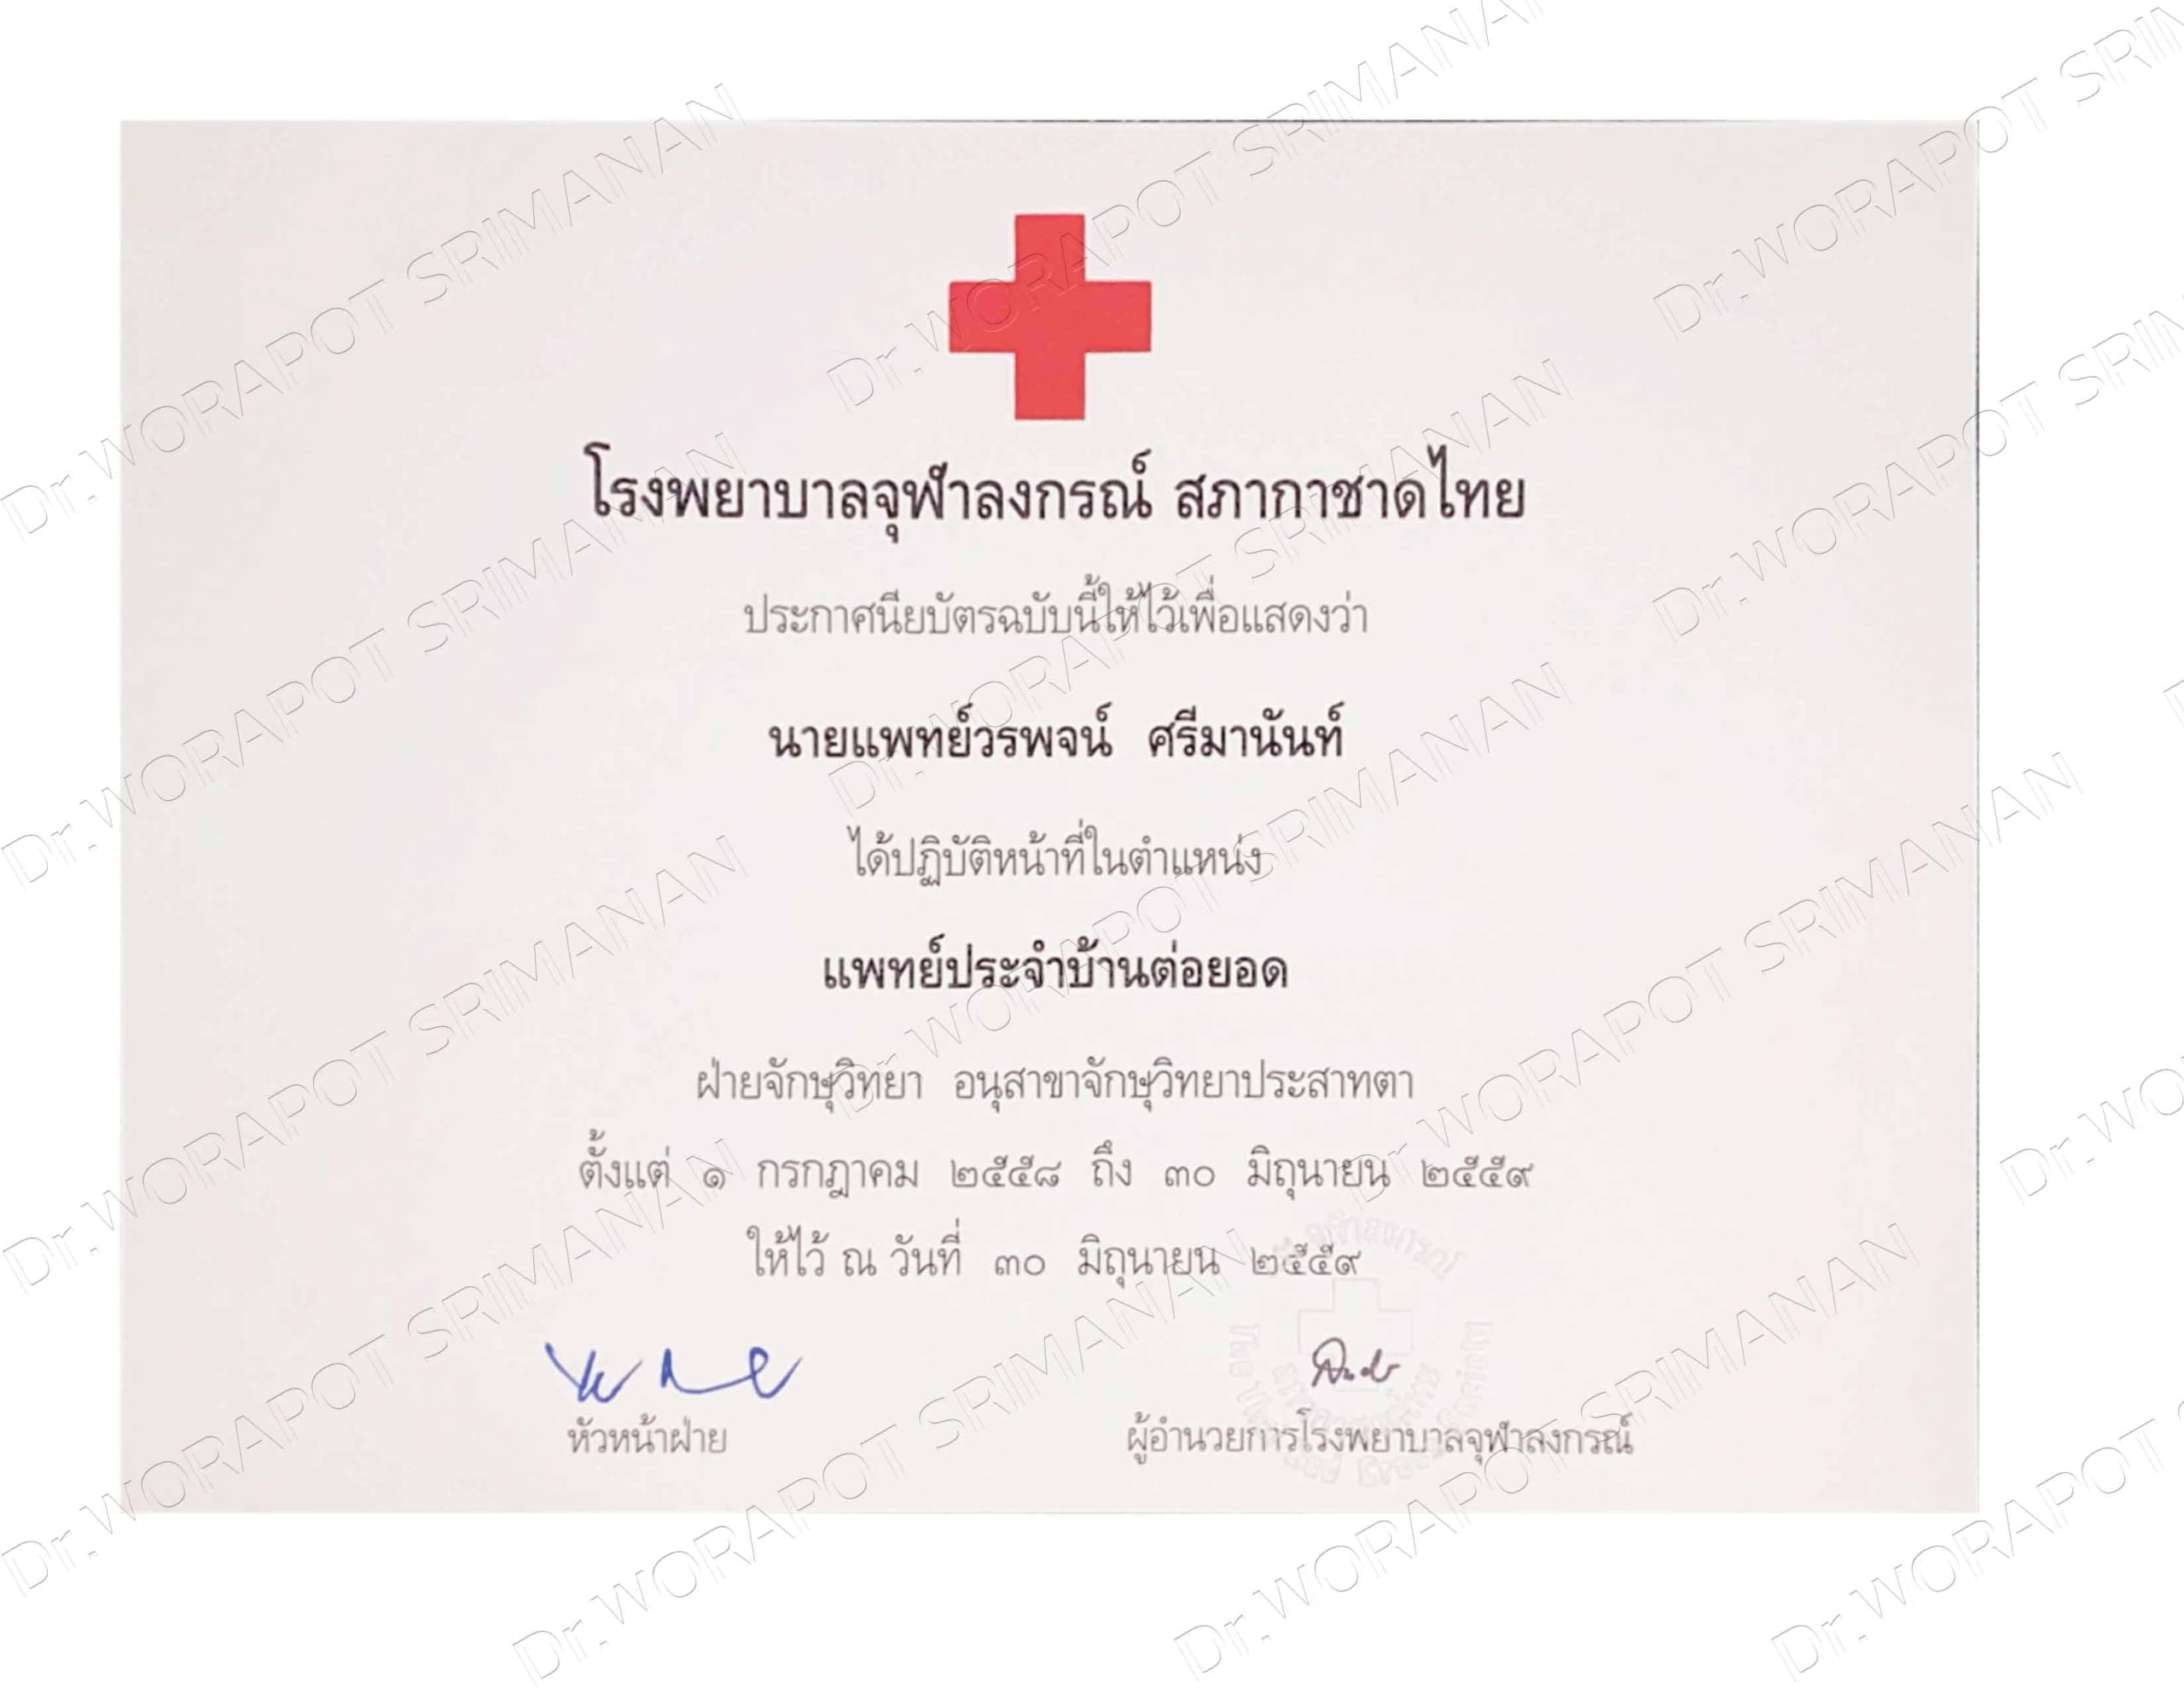 2016 - แพทย์ประจำบ้านต่อยอด <br>โรงพยาบาลจุฬาลงกรณ์ สภากาชาดไทย